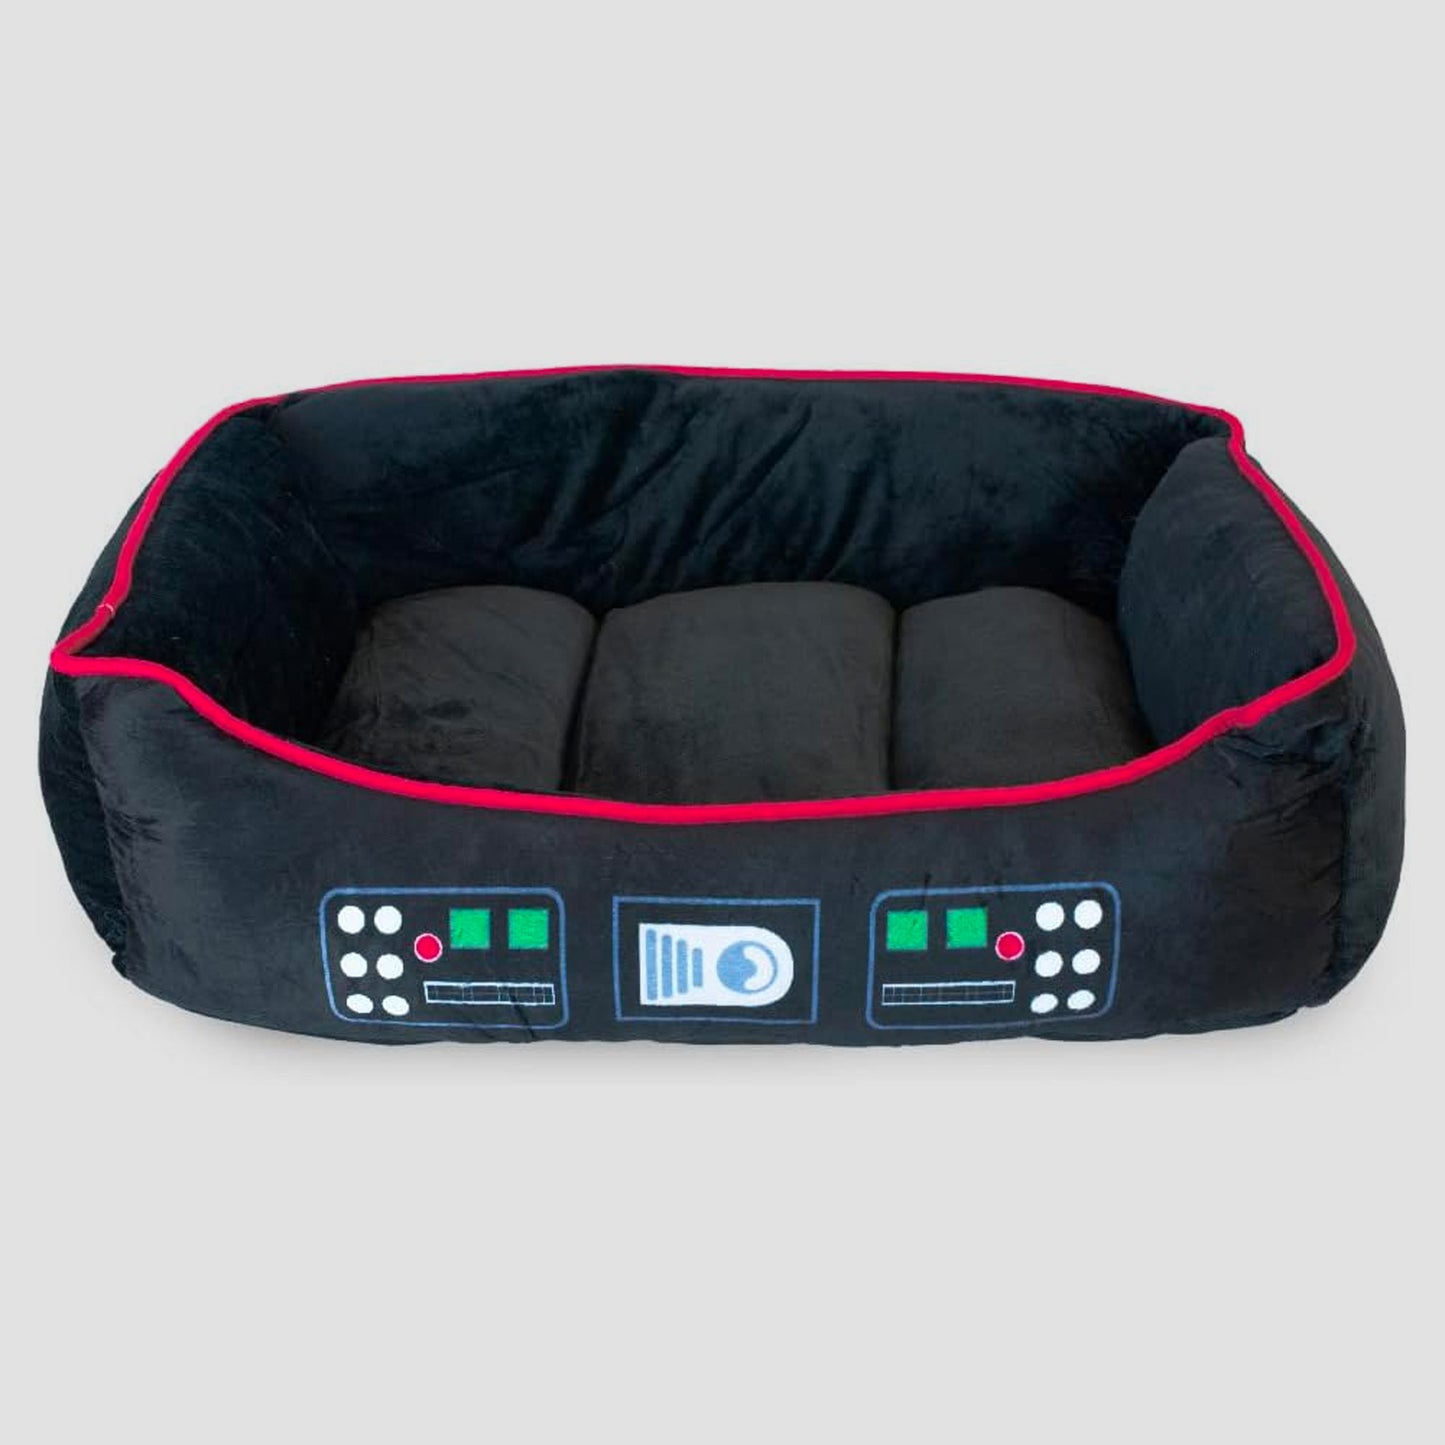 Darth Vader (Star Wars) Medium Pet Plush Bed